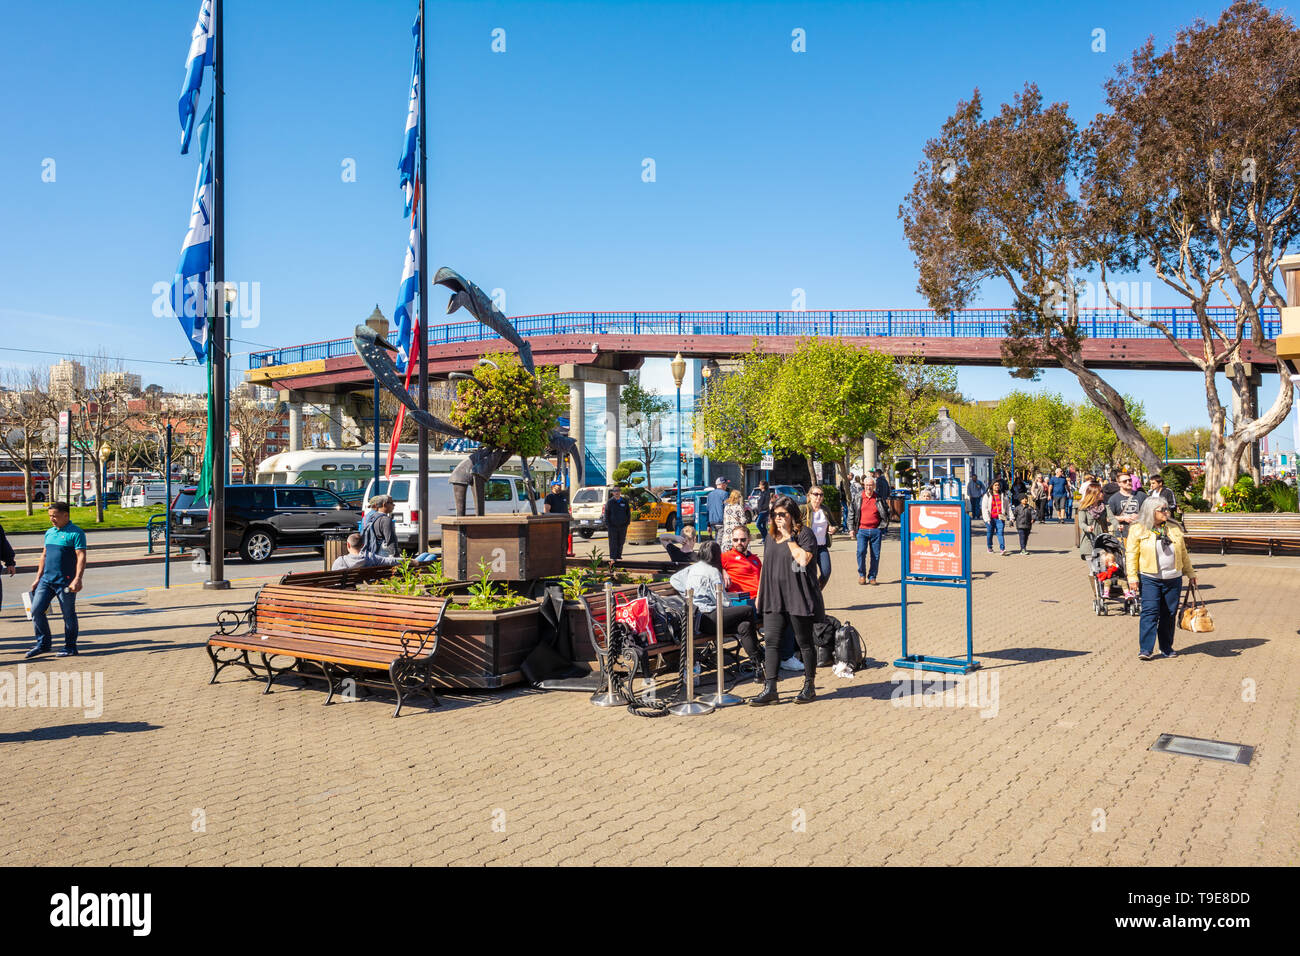 SAN FRANCISCO, USA - 30. März 2019: Touristen am Pier 39, Fisherman's Wharf. Pier 39 ist ein berühmtes Einkaufszentrum und beliebte Touristenattraktion in S Stockfoto